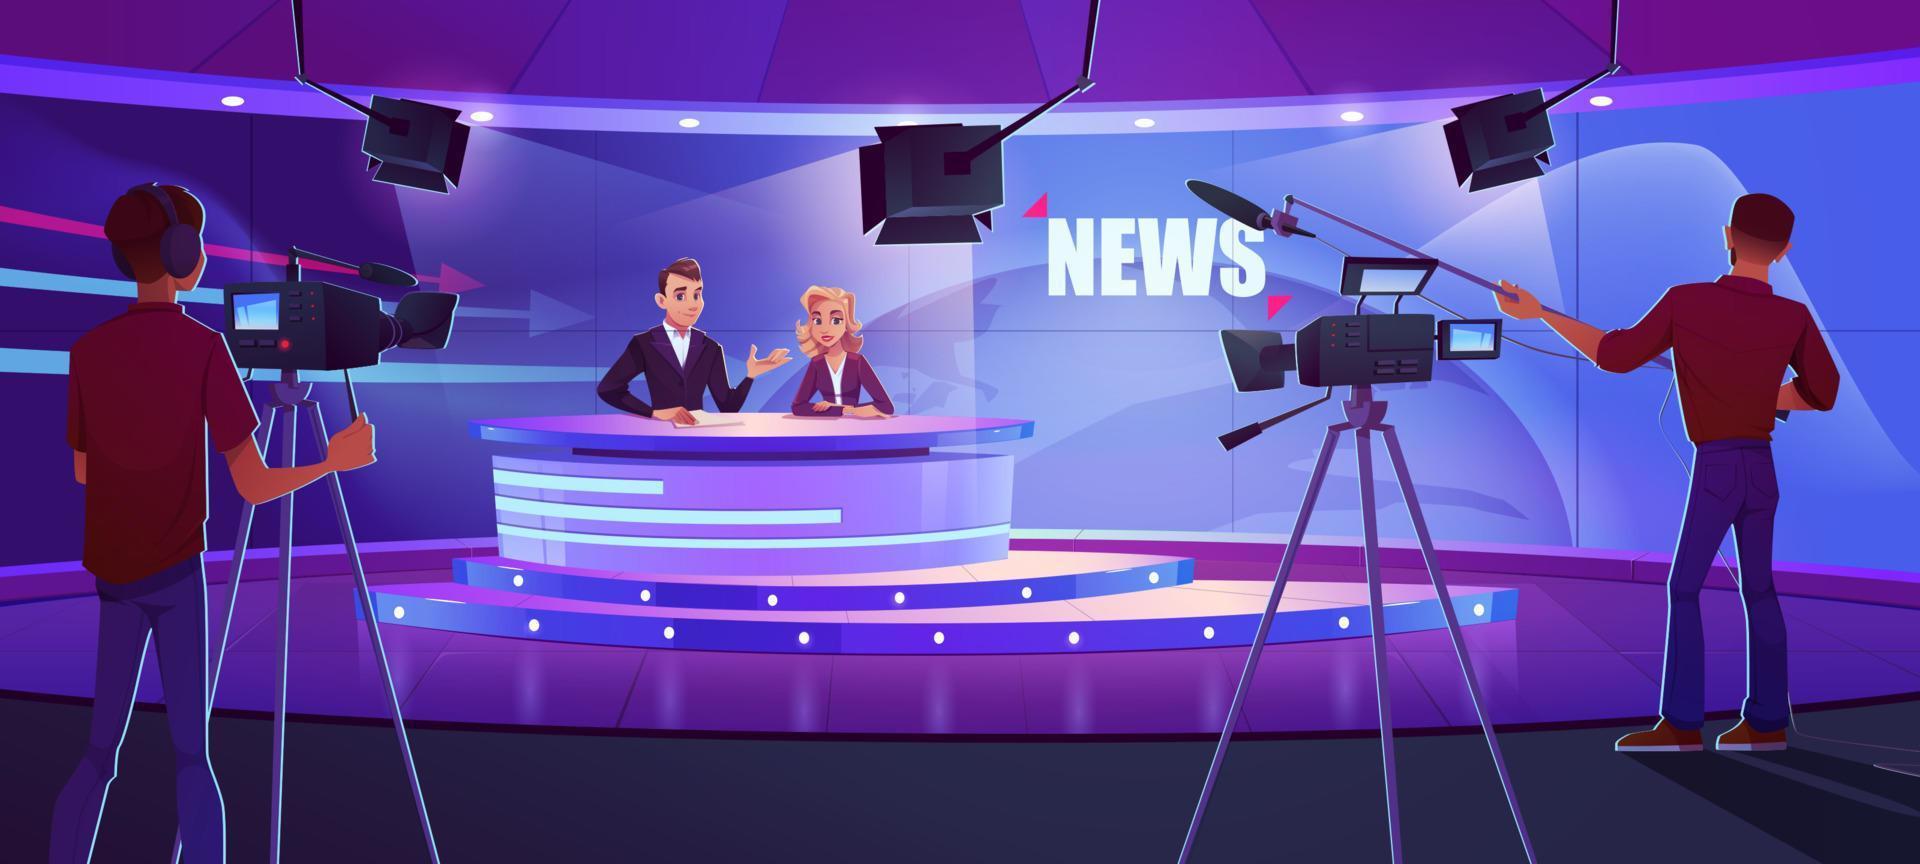 apresentadores de tv transmitindo notícias no estúdio moderno vetor